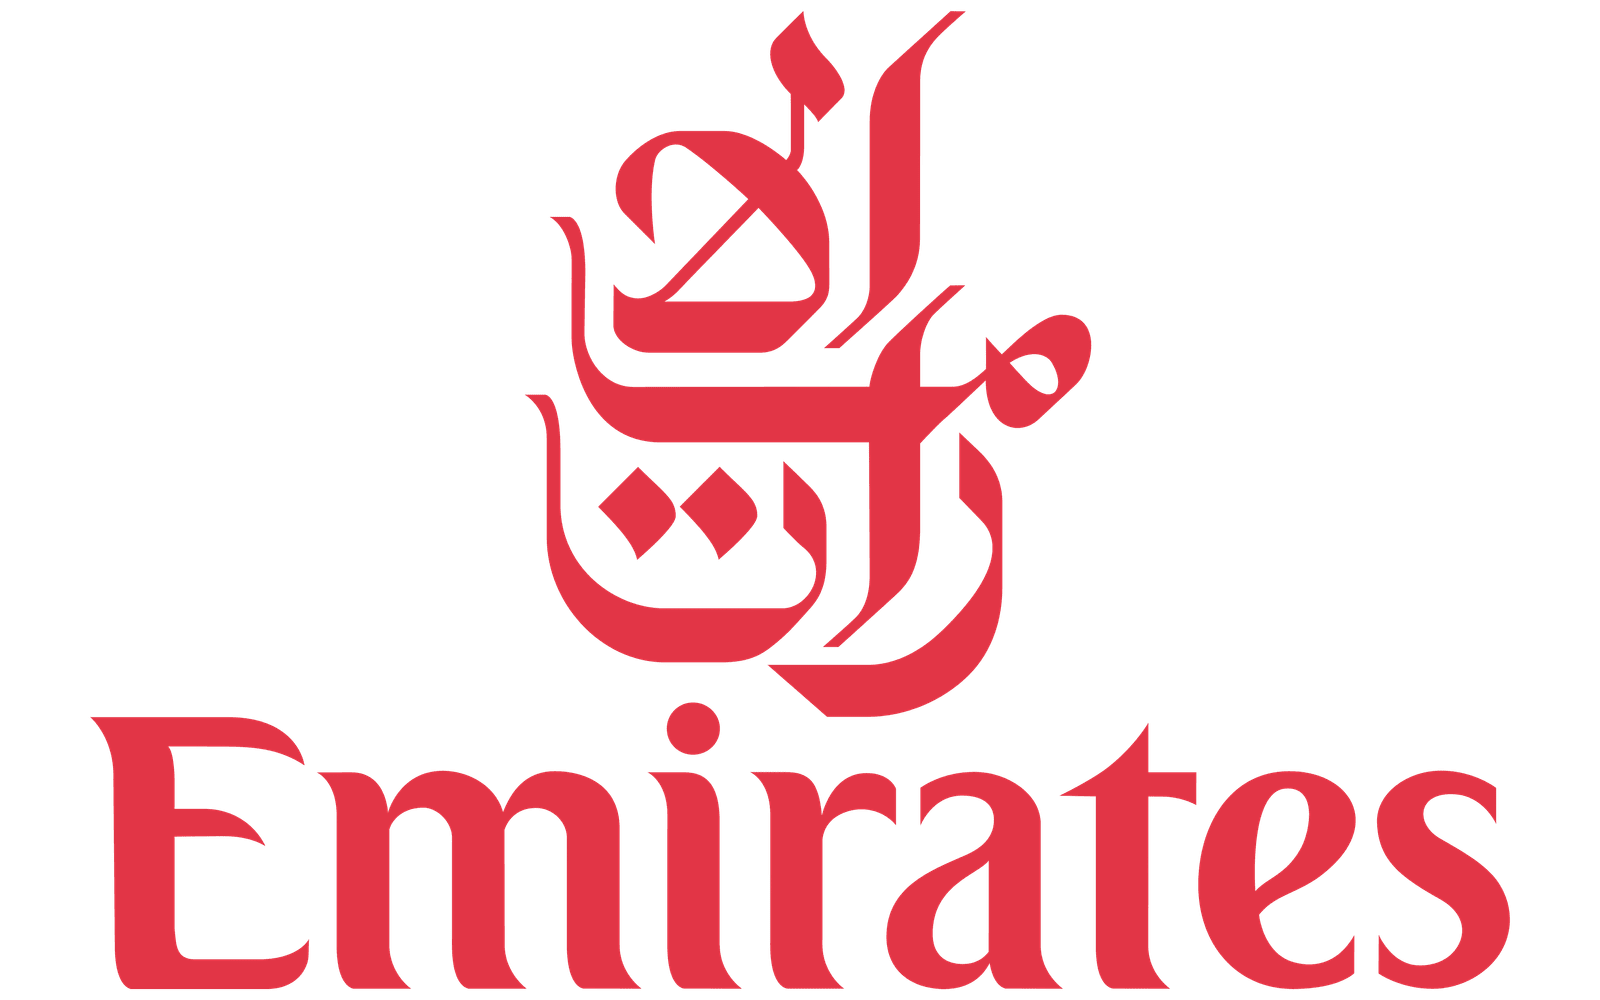 Emirates-Logo